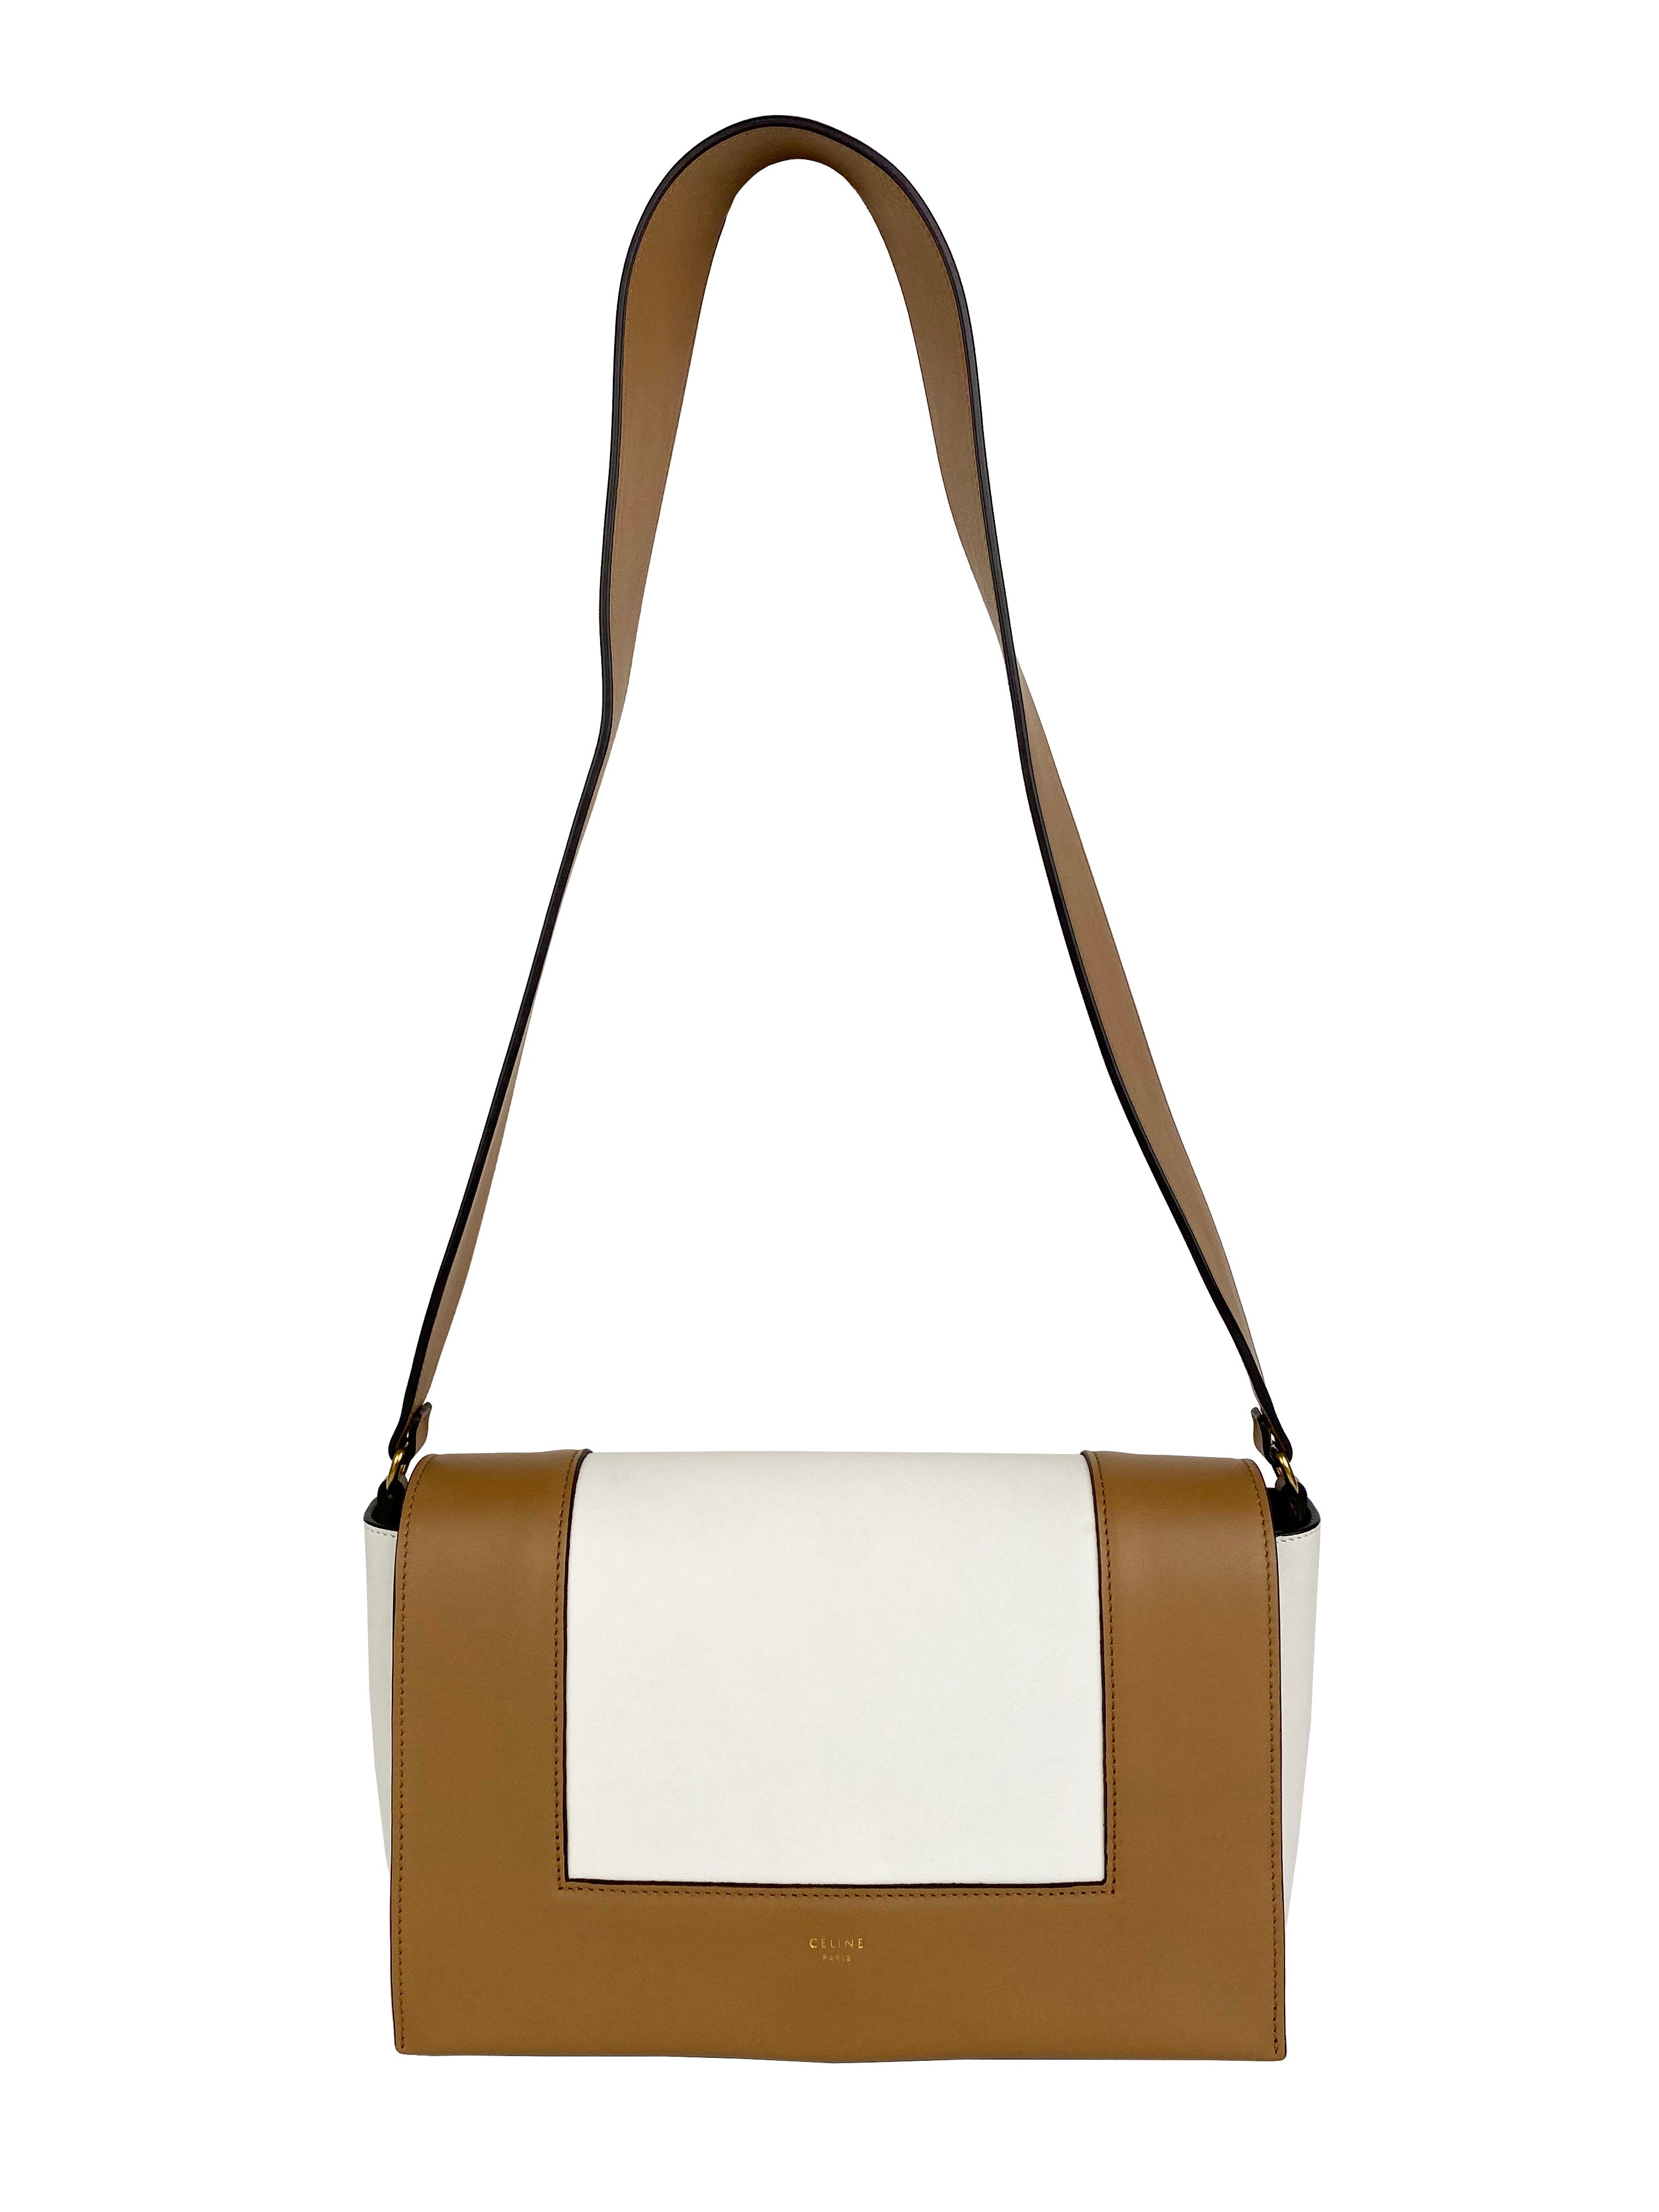 Celine Tan & Optic White Medium Frame Bag